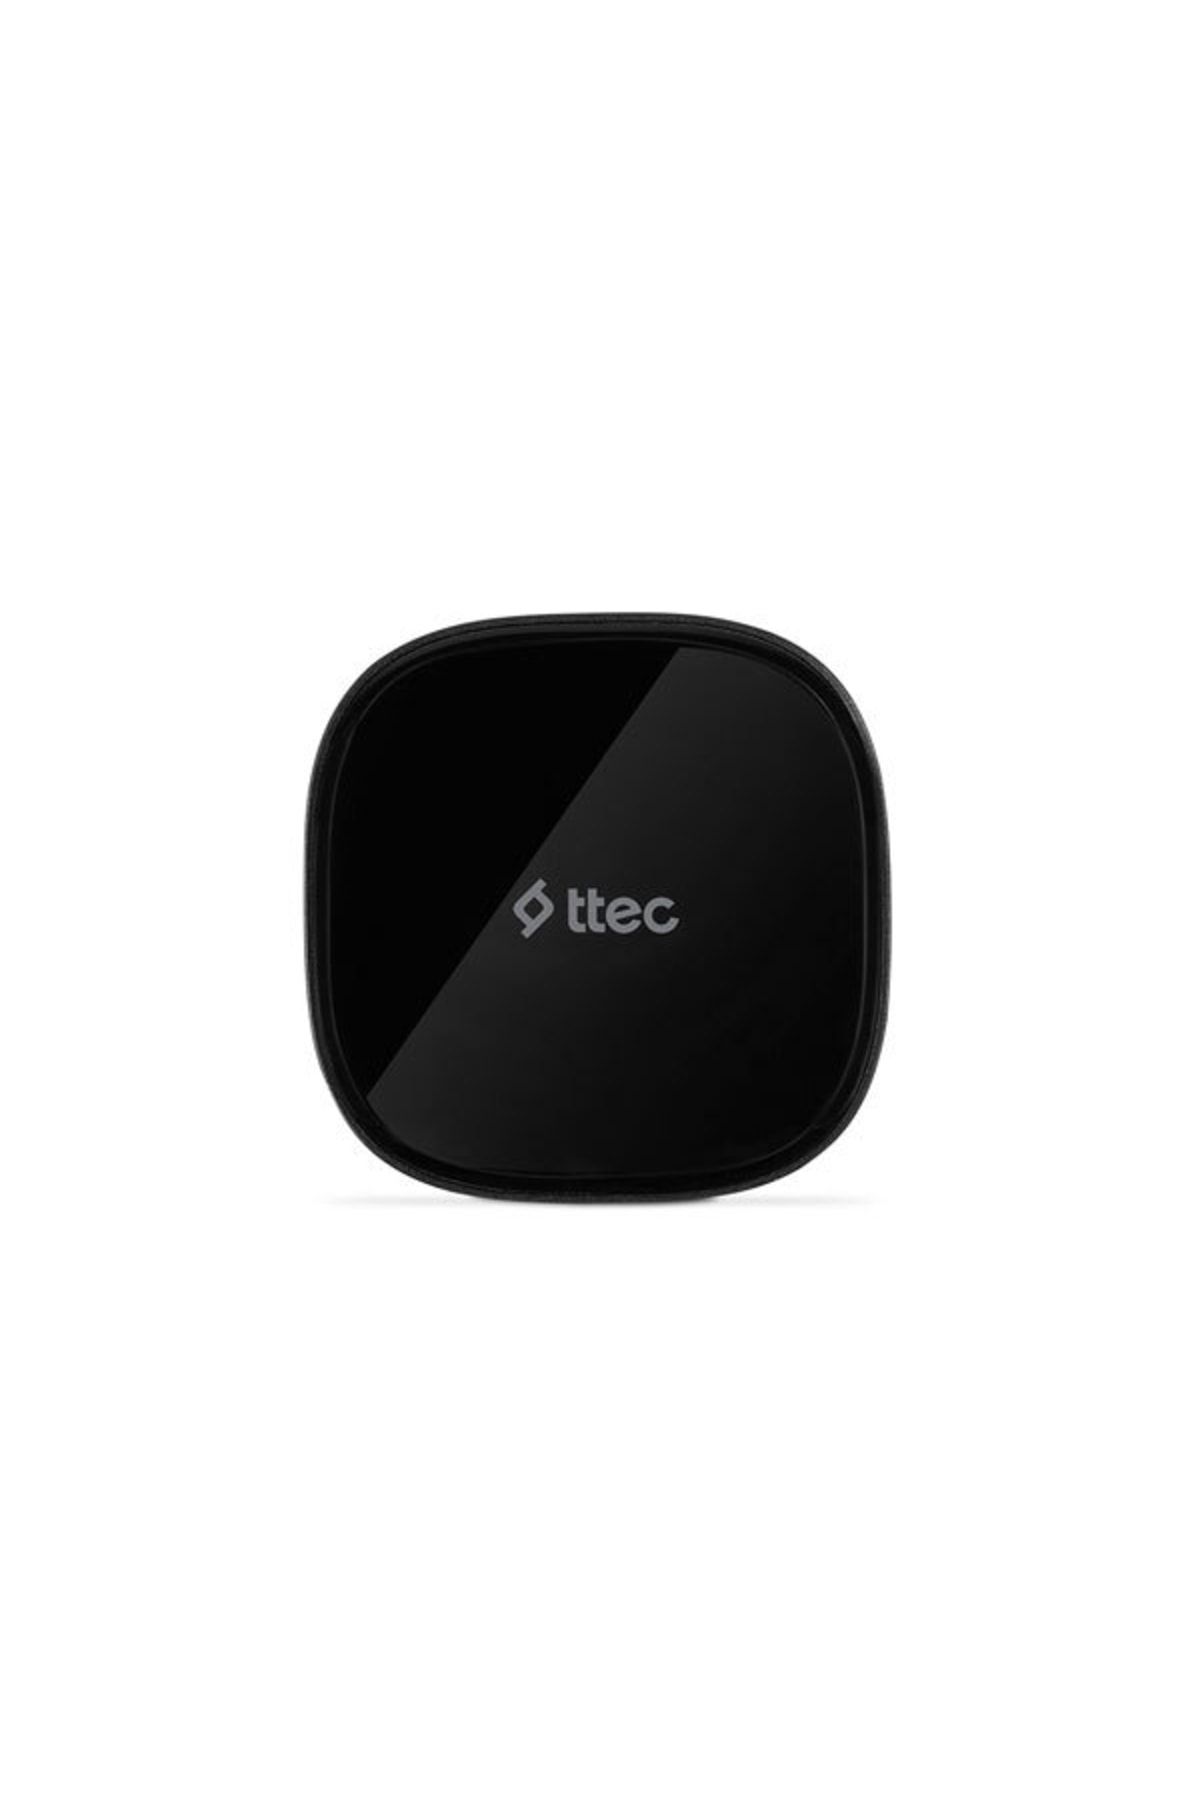 Ttec AirCharger M MagSafe Özellikli Kablosuz Hızlı Şarj Aleti